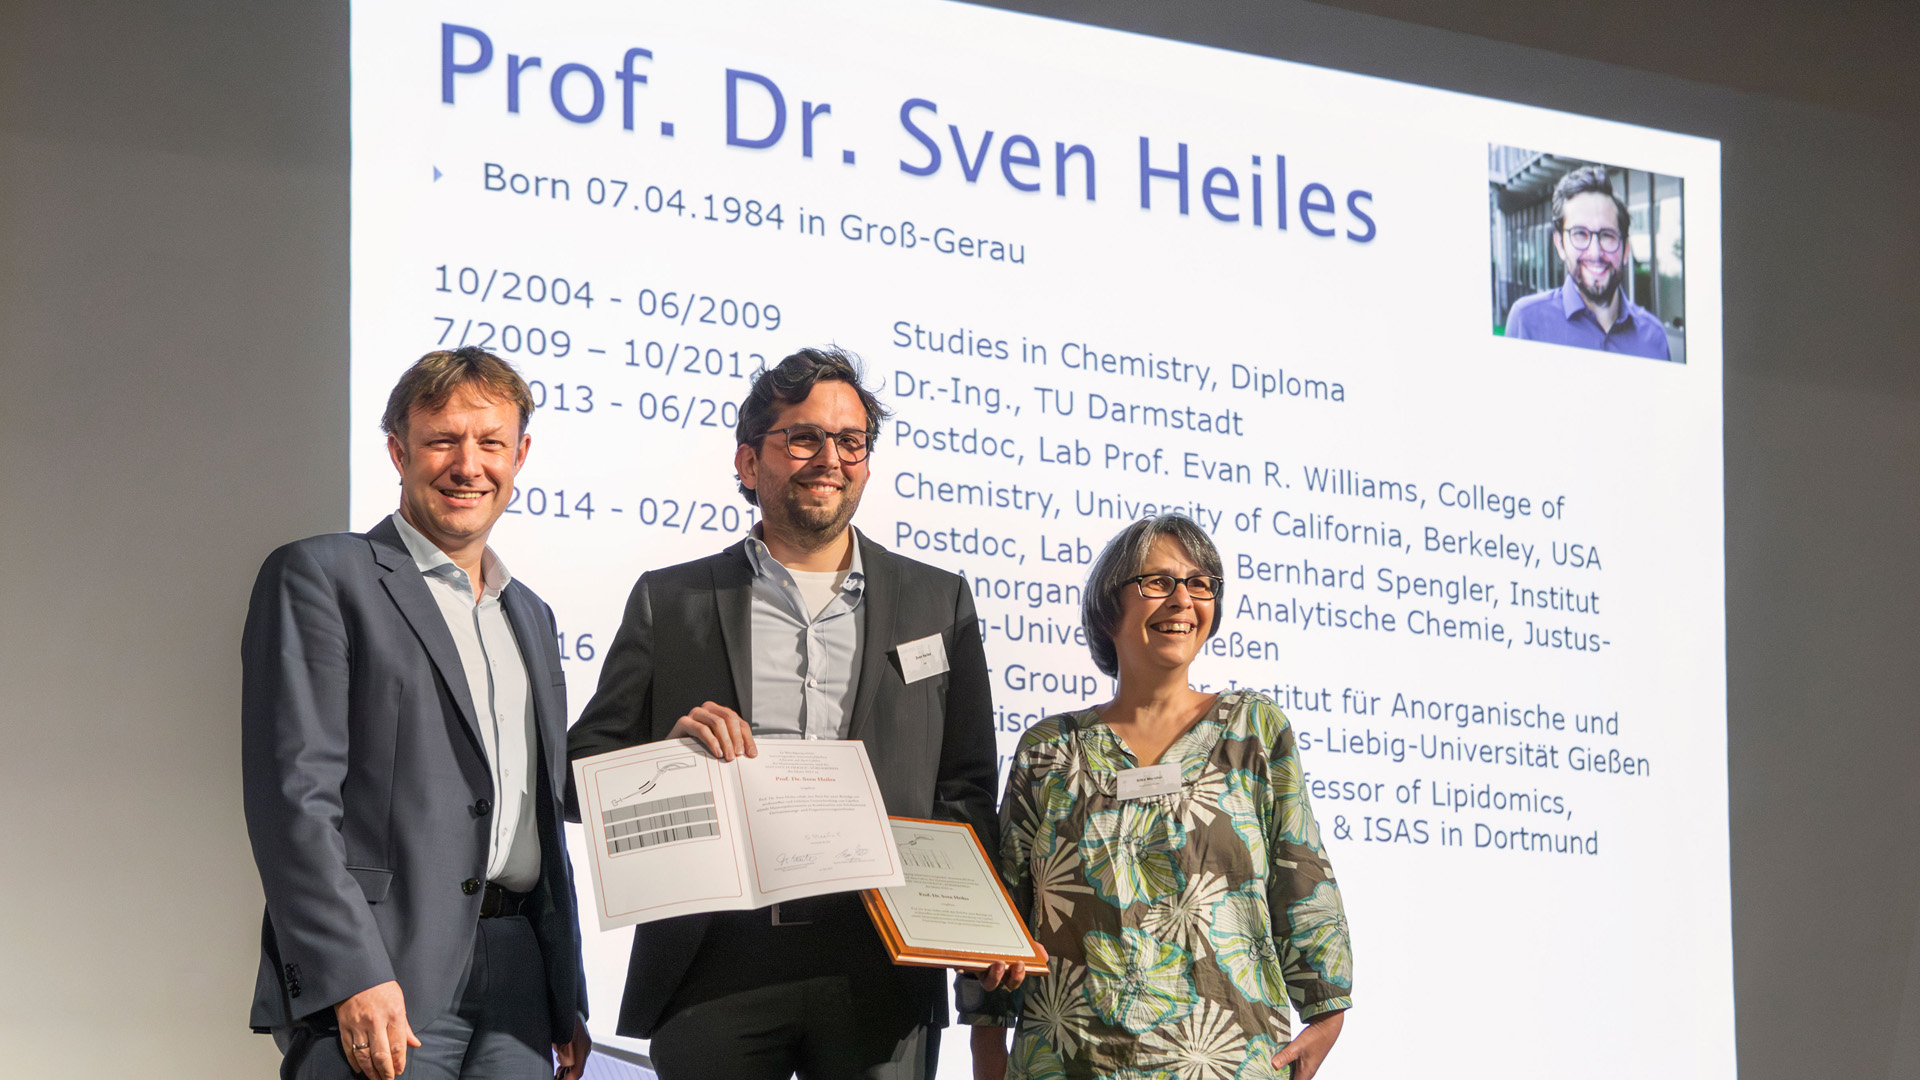 Auf dem Bild sind drei Personen auf einer Bühne zu sehen. In der Mitte steht der Preisträger Sven Heiles und hält seine Urkunde in die Kamera.